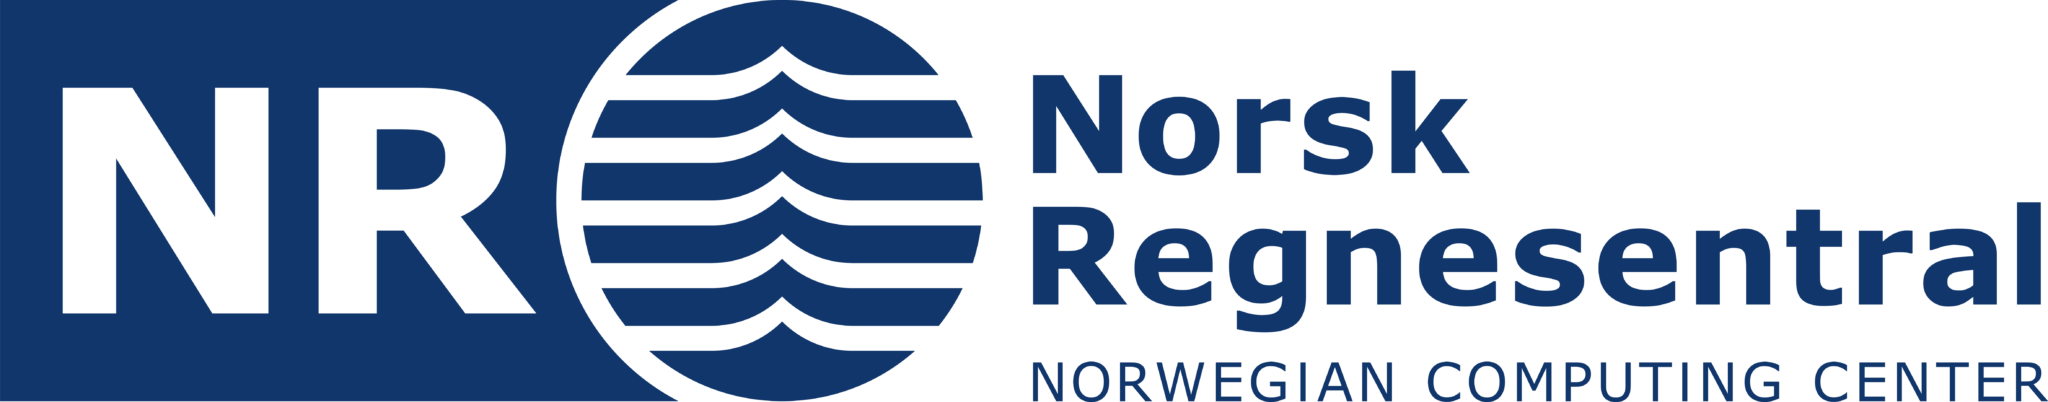 Norsk Regnesentral logo